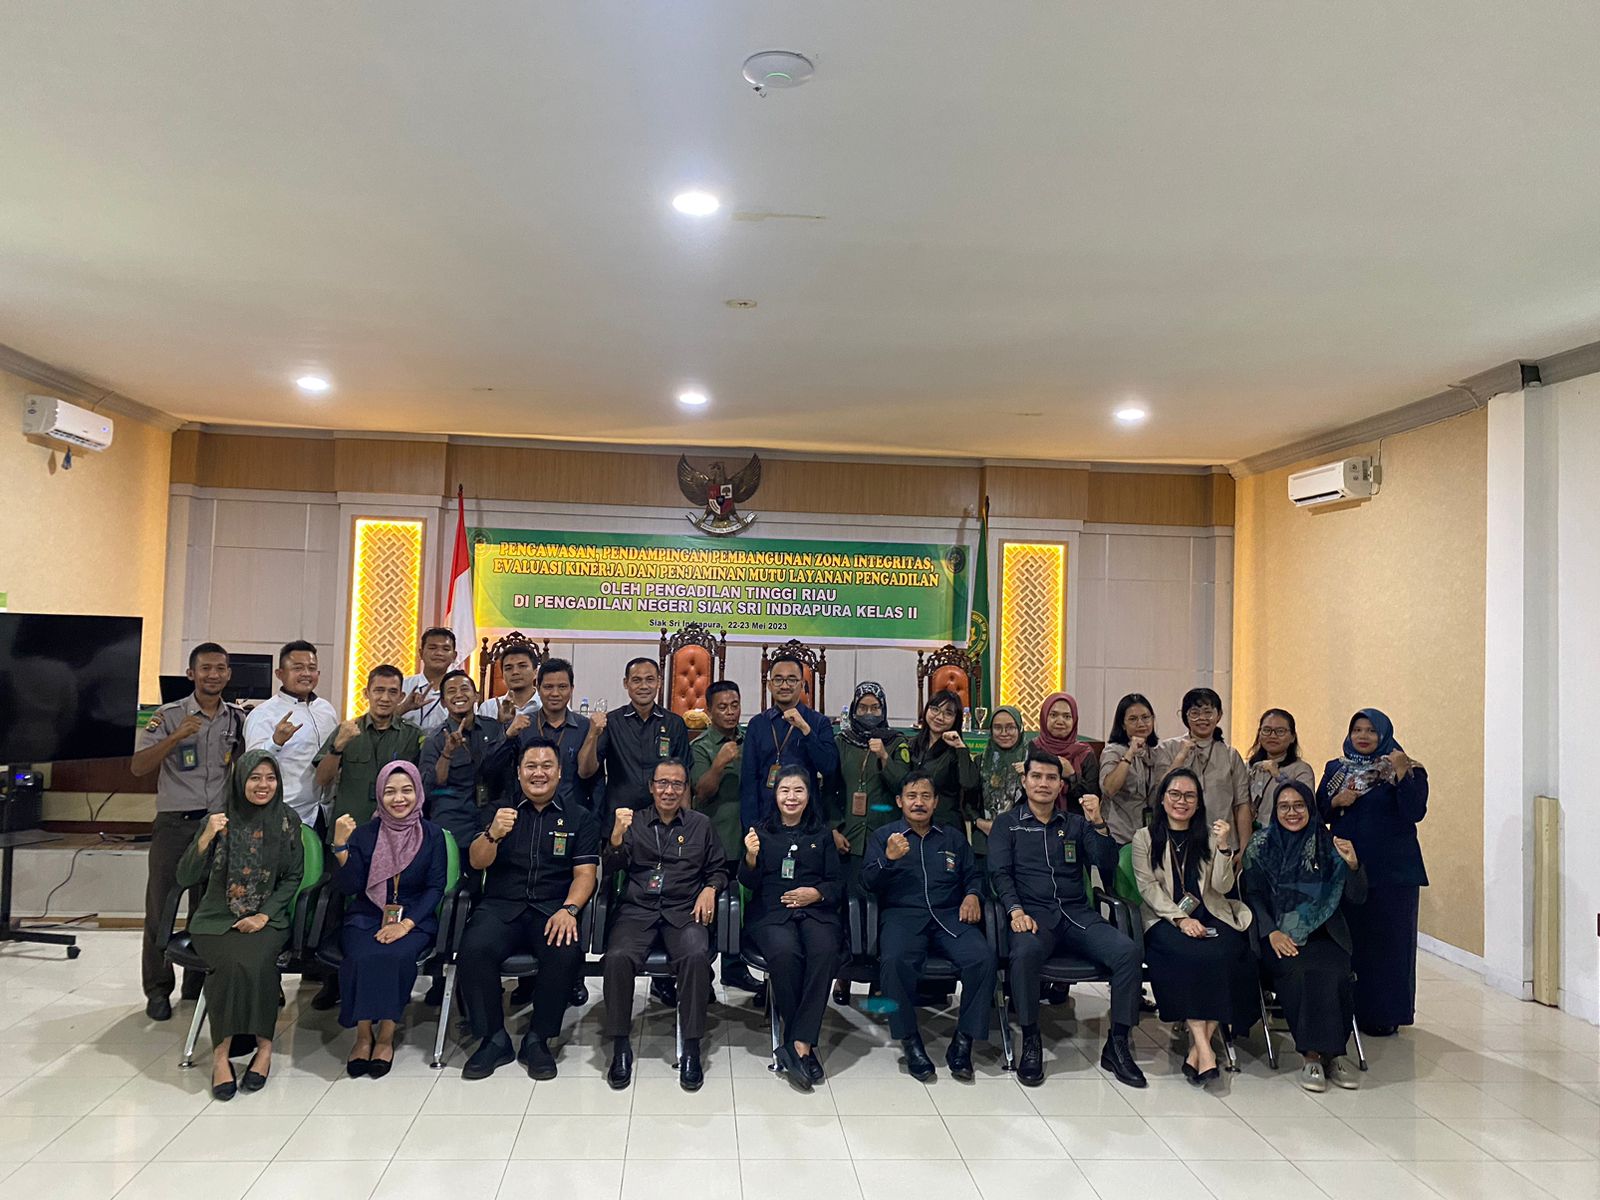 Closing Meeting Pengawasan, Pendampingan Pembangunan Zona Integritas, Evaluasi Kinerja dan Penjaminan Mutu Layanan Pengadilan oleh Pengadilan Tinggi Riau di Pengadilan Negeri Siak Sri Indrapura Kelas I